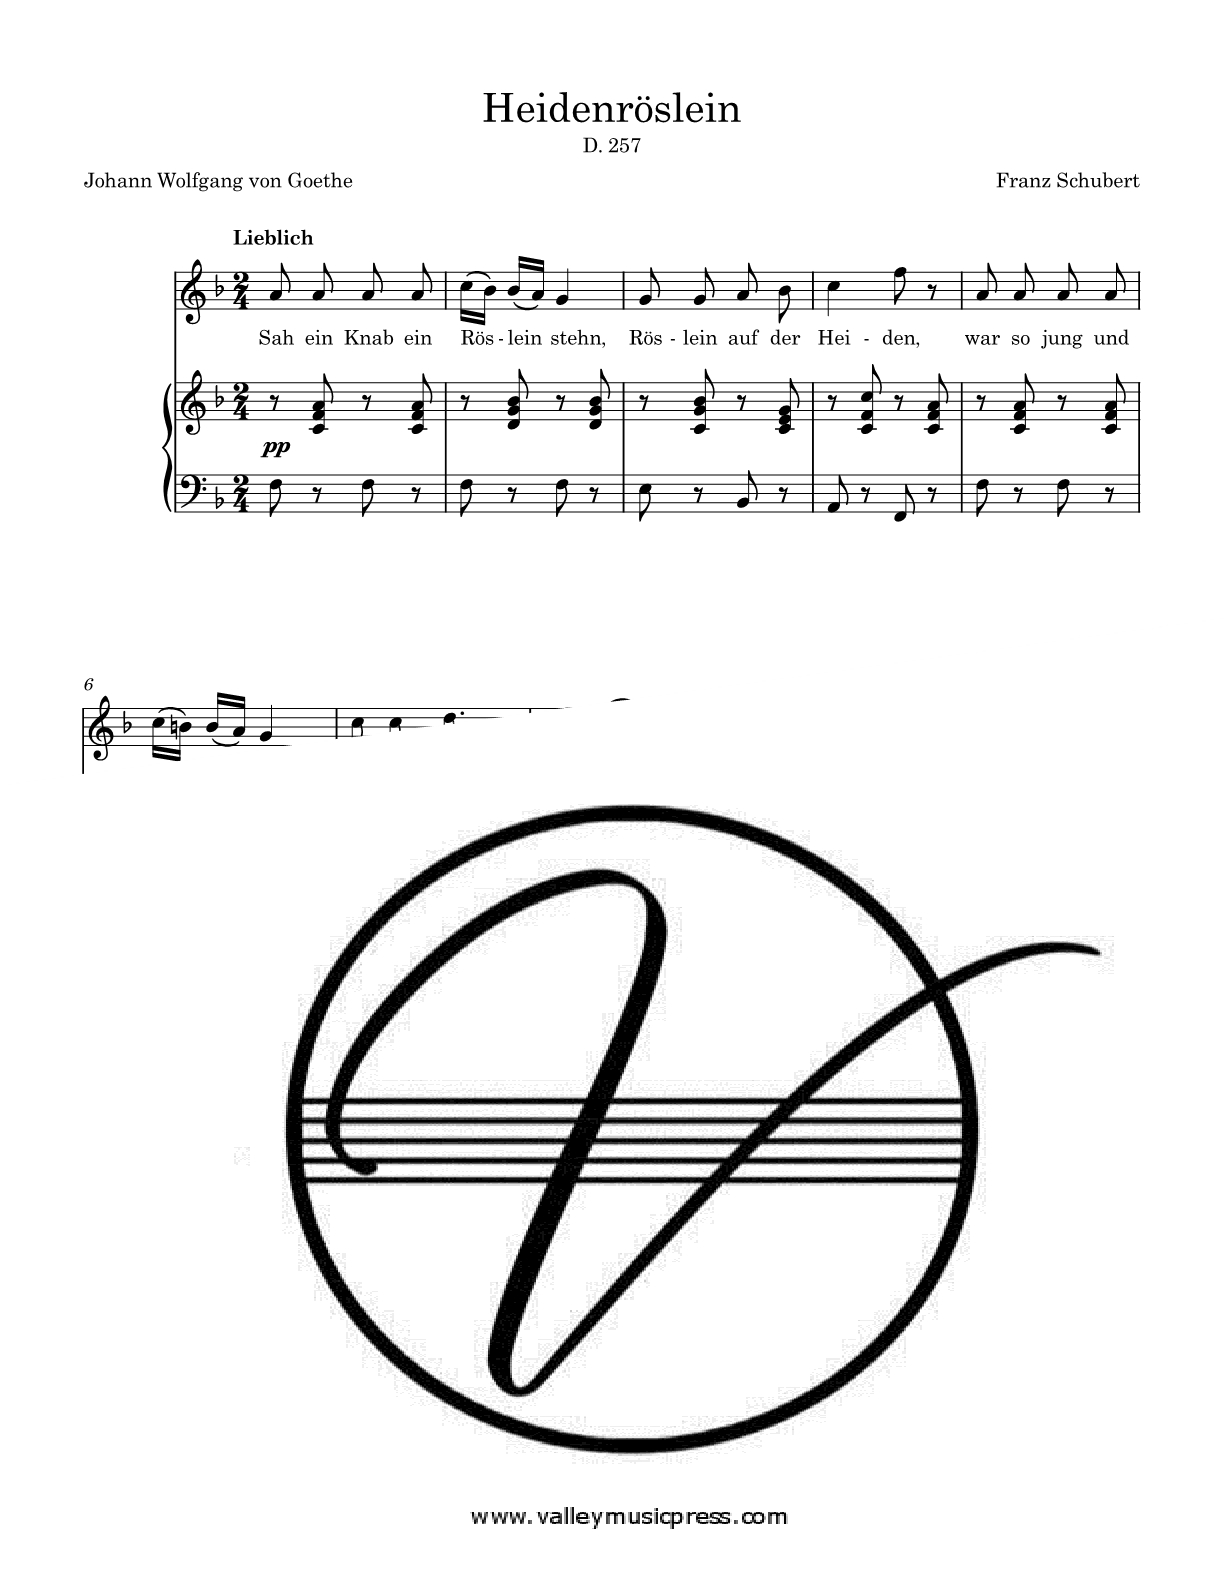 Schubert - Heidenroslein D. 257 Op. 3 No. 3 (Voice)